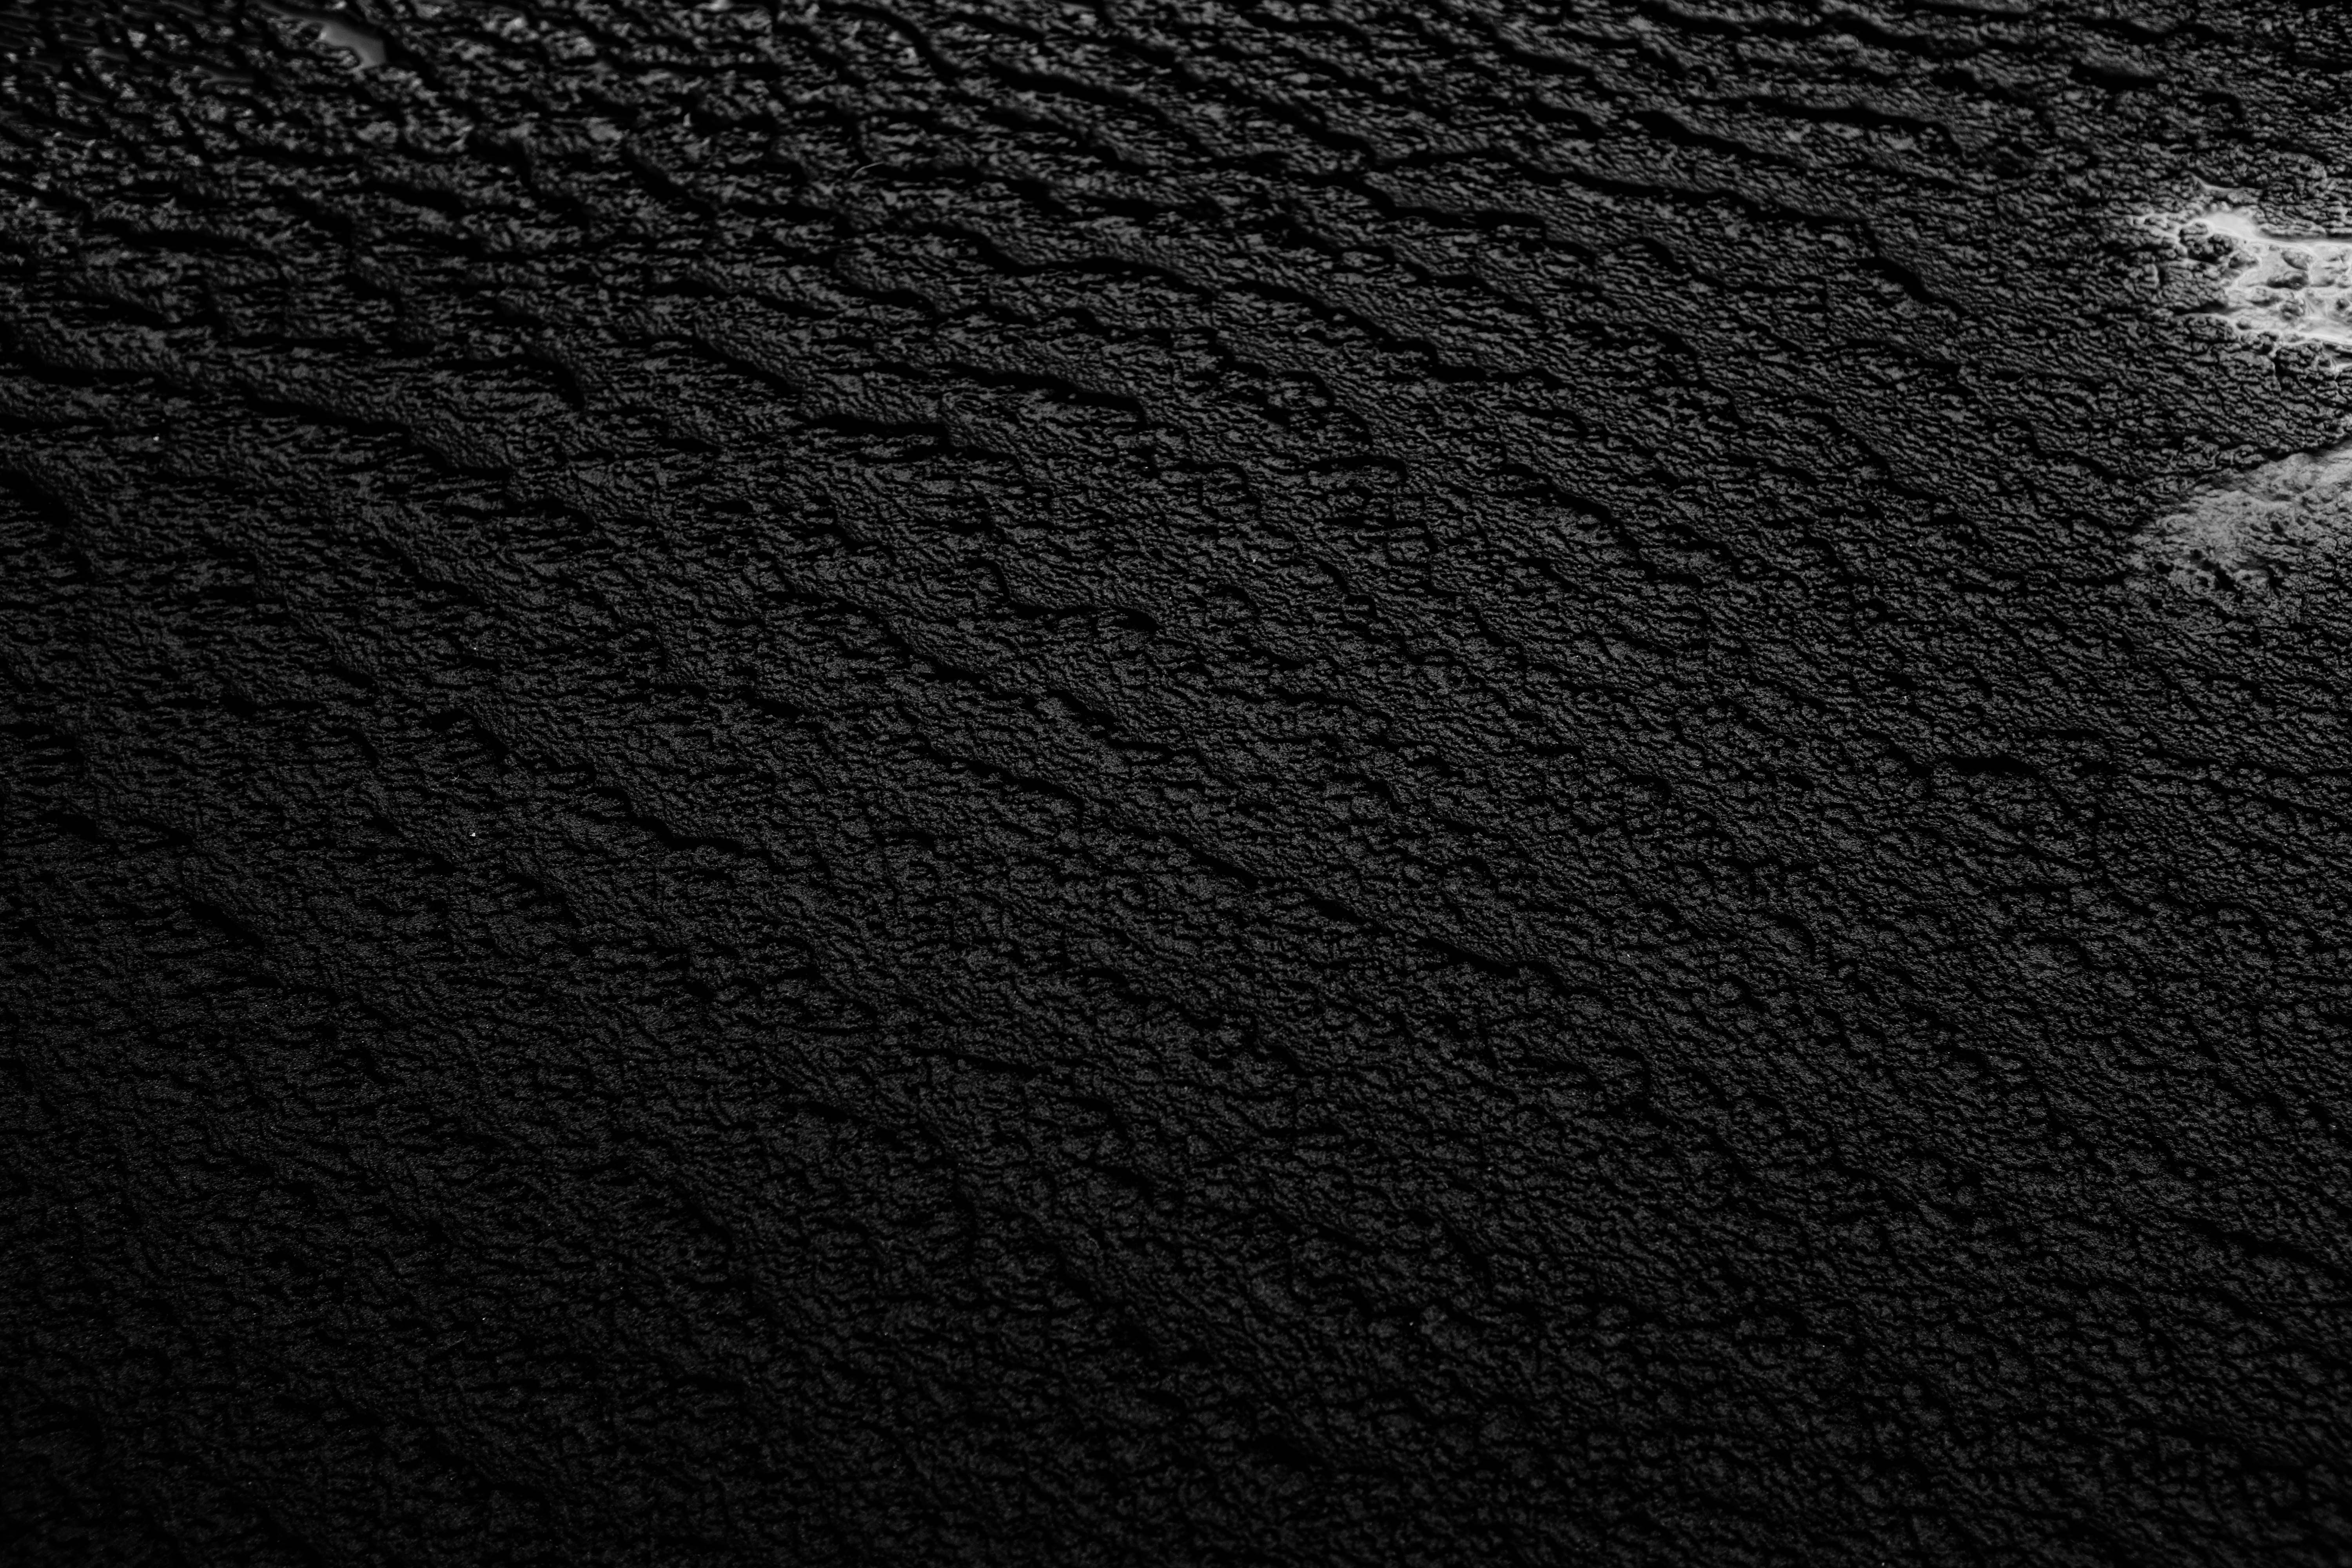 Khám phá hình nền đen embossed độc đáo và sắc nét để tạo sự tinh tế cho màn hình của bạn. Hình nền được cấu tạo bằng kỹ thuật embossed để tạo ra một không gian trông rất chuyên nghiệp. Hãy cùng chiêm ngưỡng những thiết kế đẹp mắt với màu sắc đen huyền bí và hiệu ứng bề mặt hoa văn độc đáo.